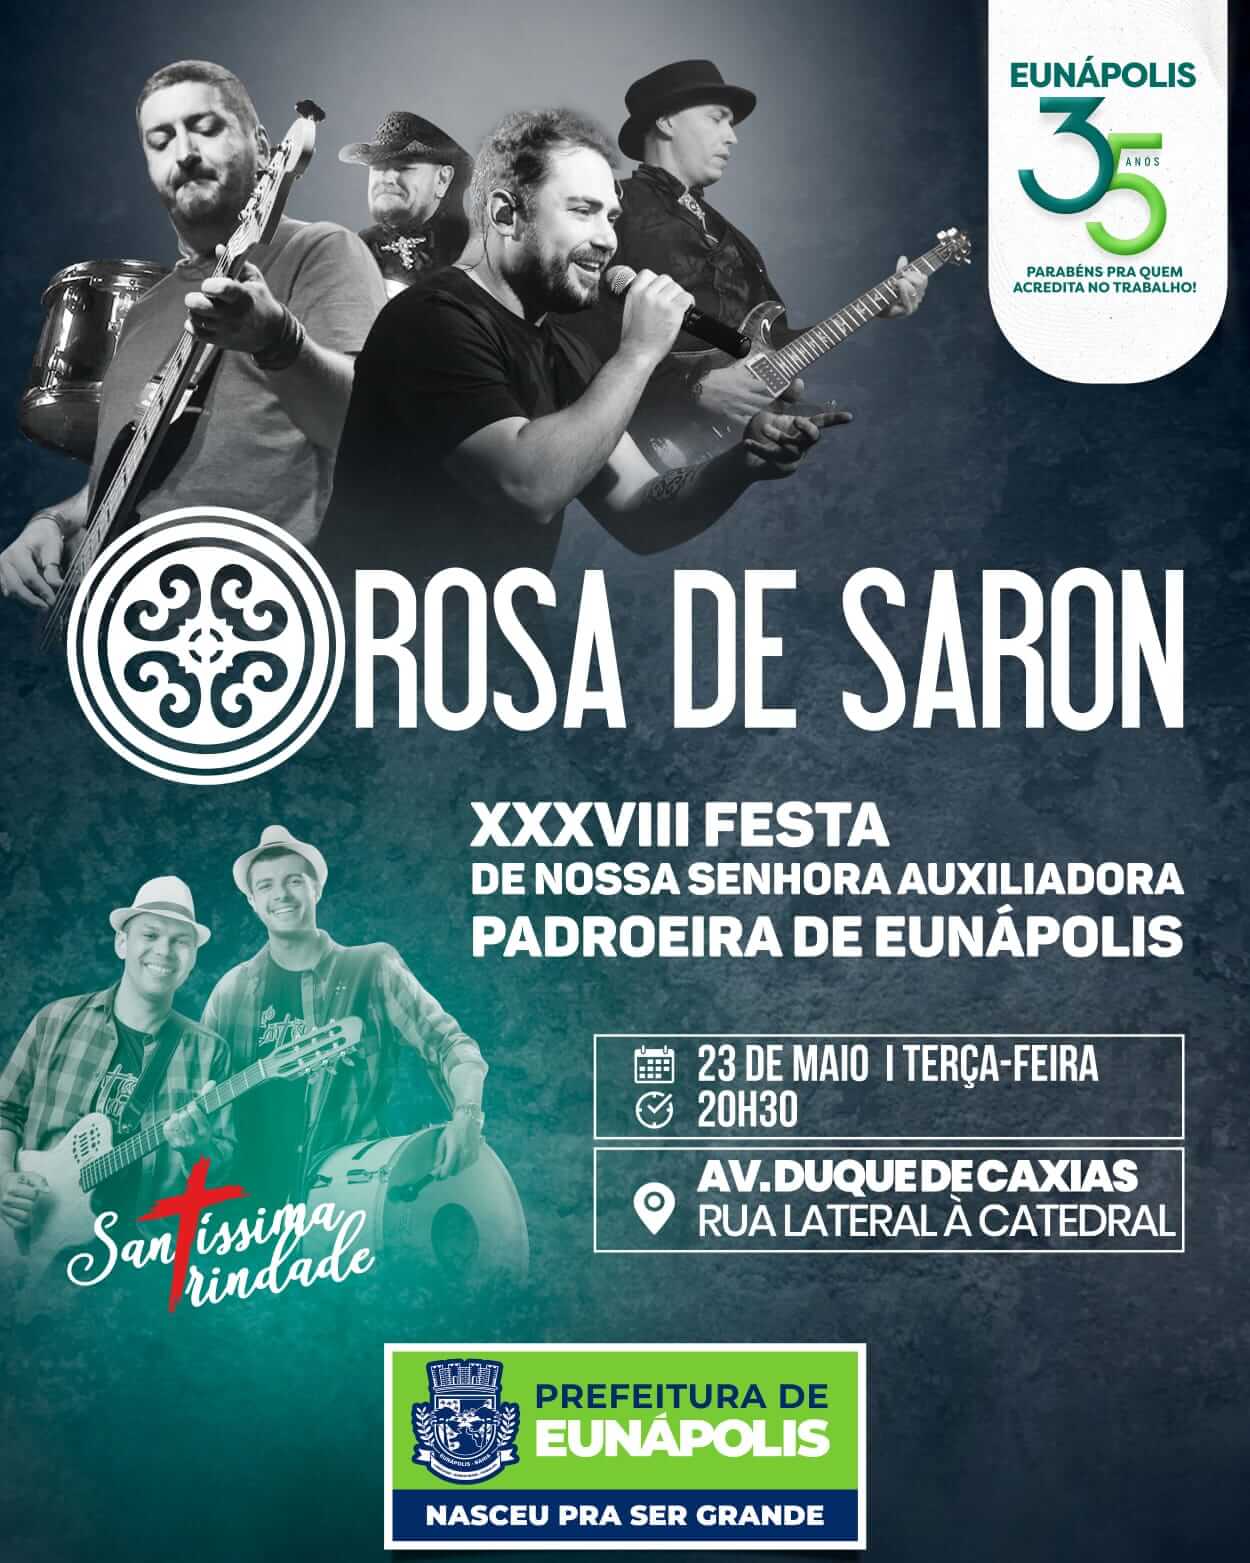 Prefeitura de Eunápolis promove show de Rosa de Saron na Festa da Padroeira nesta terça-feira 18